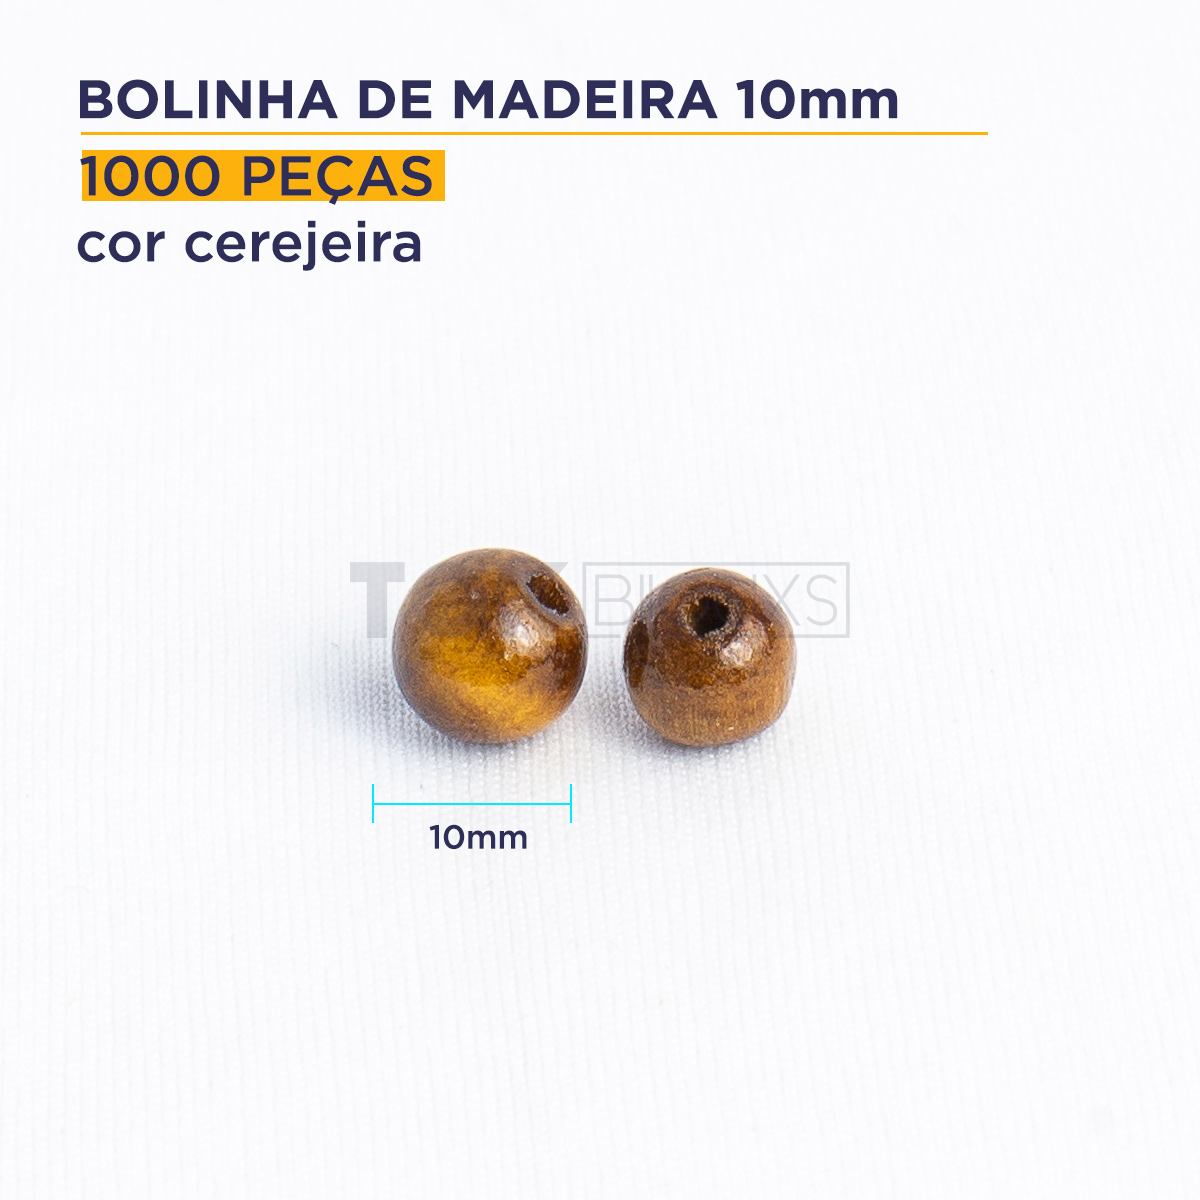 Bolinha de Madeira - 10mm - Cerejeira - 1000 Peças